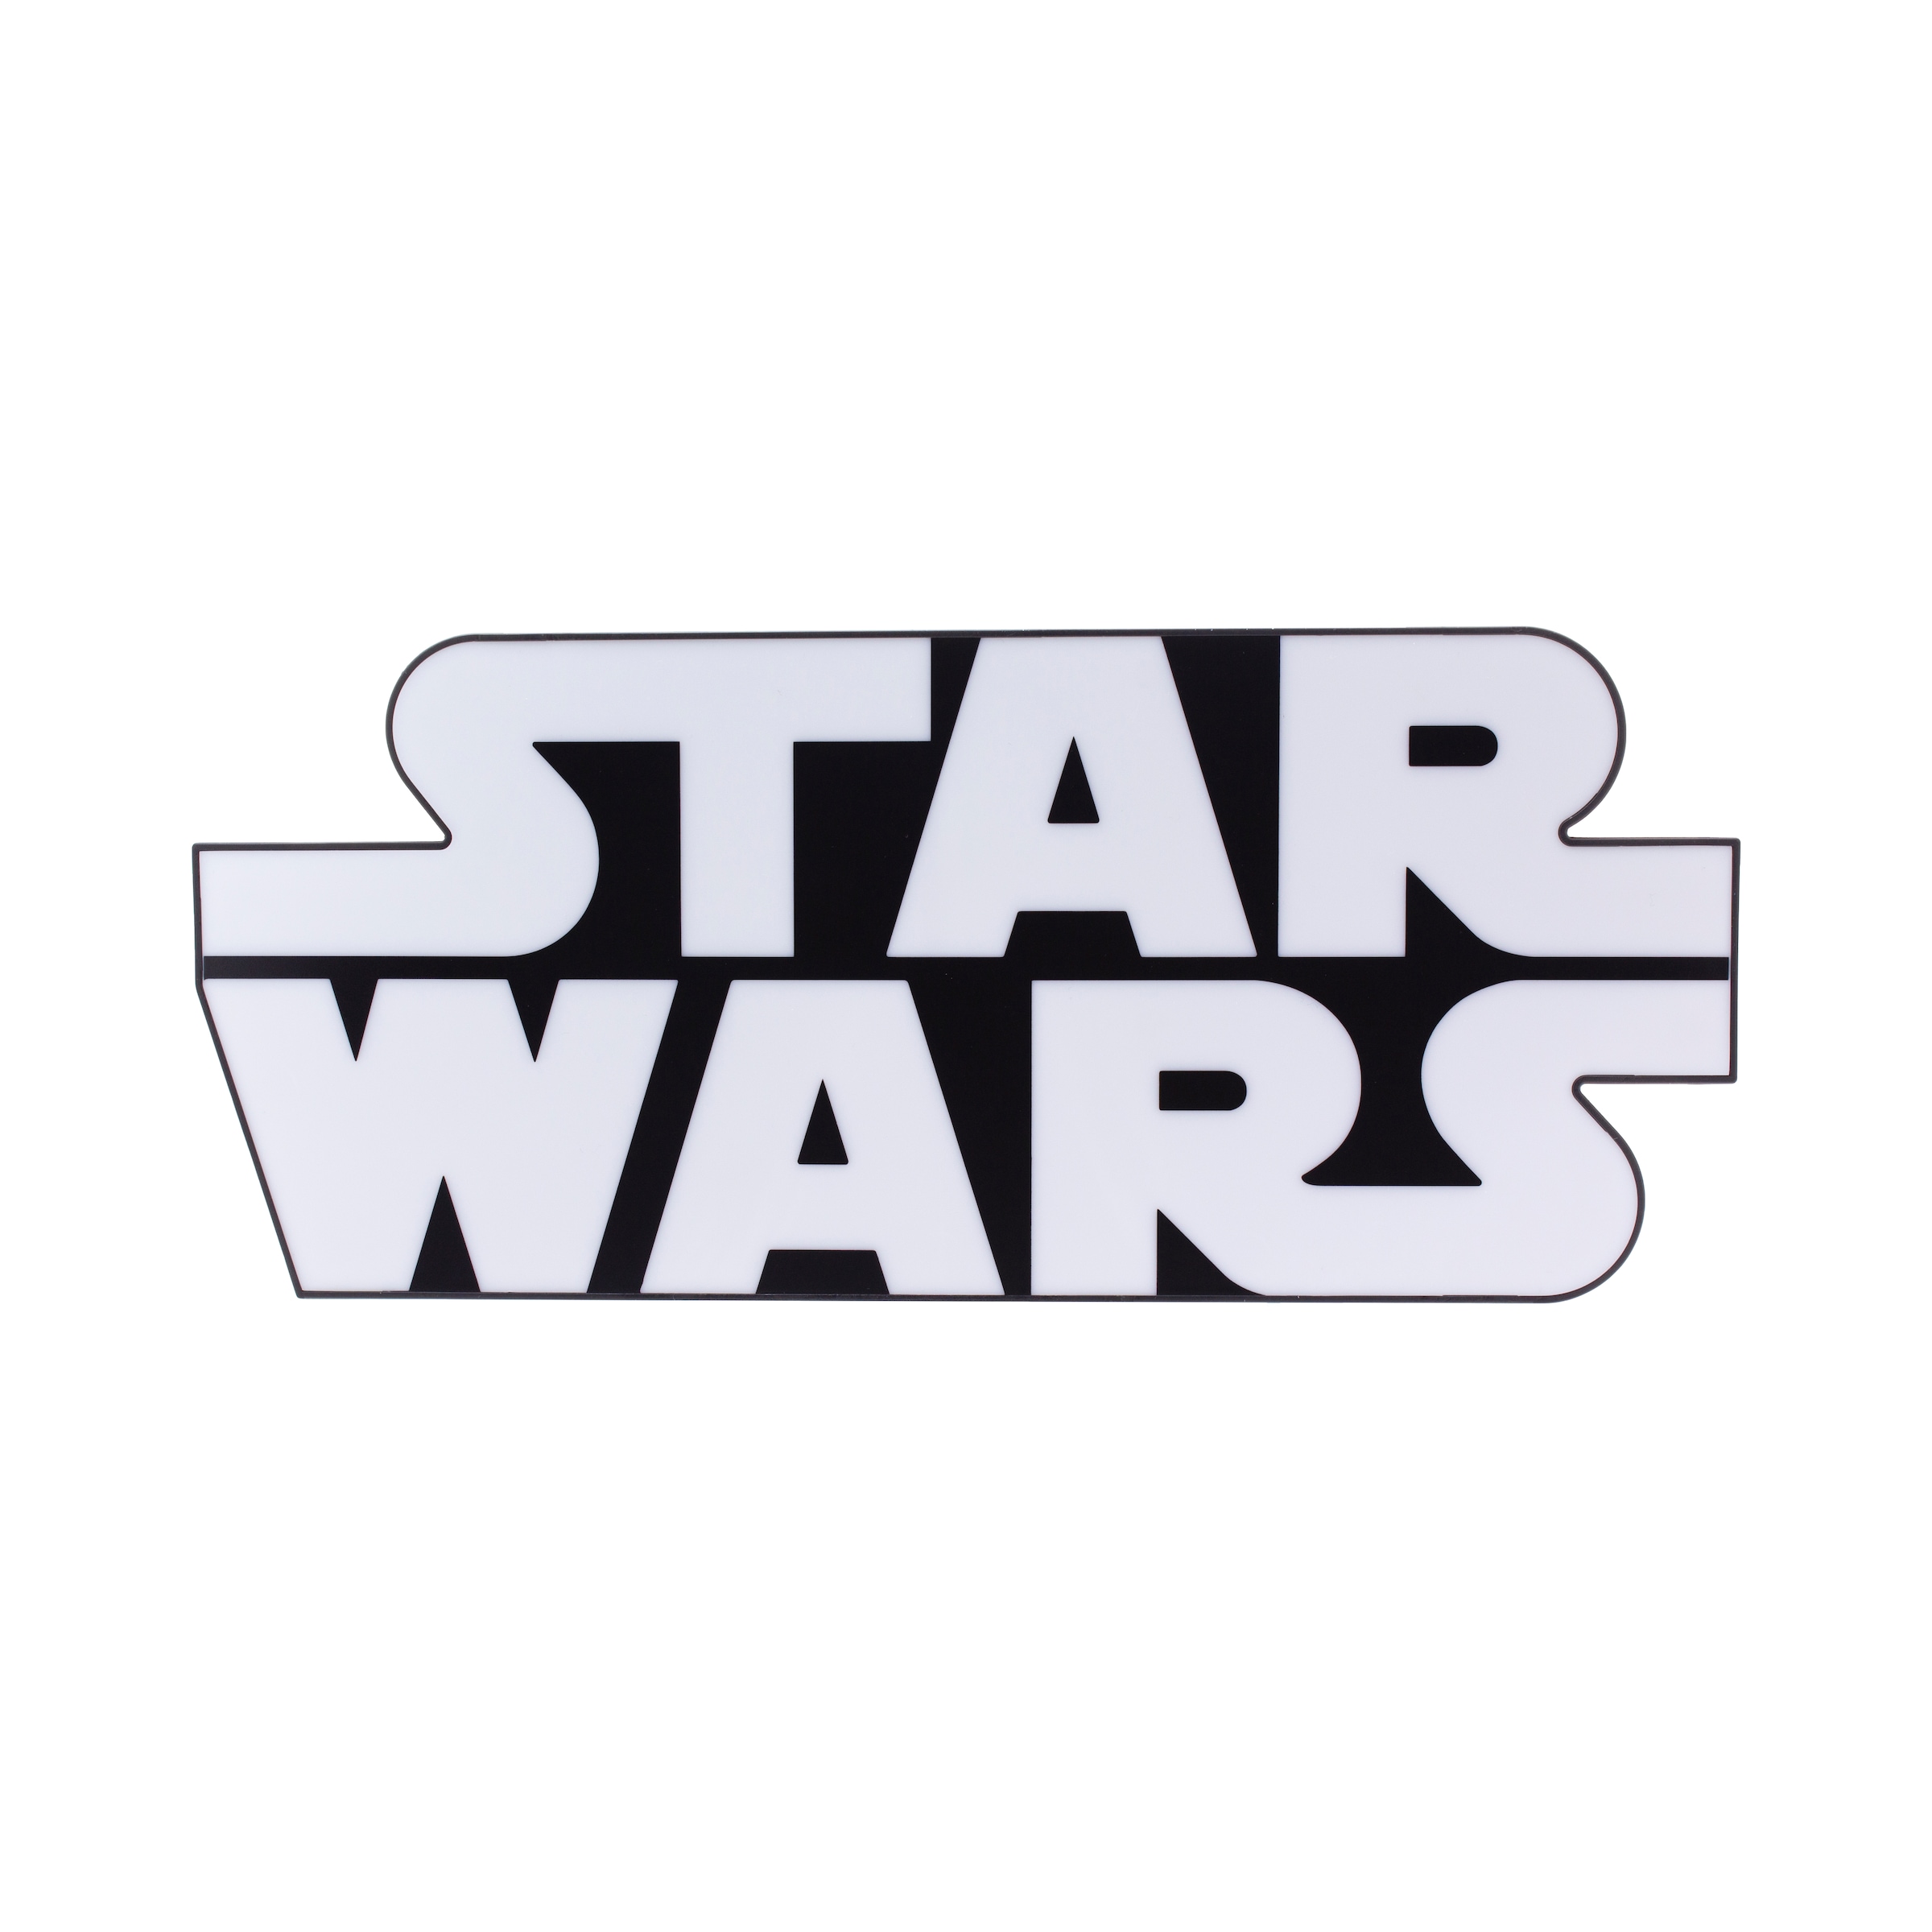 ♕ Paladone LED Dekolicht »Star Wars Logo Leuchte« versandkostenfrei auf